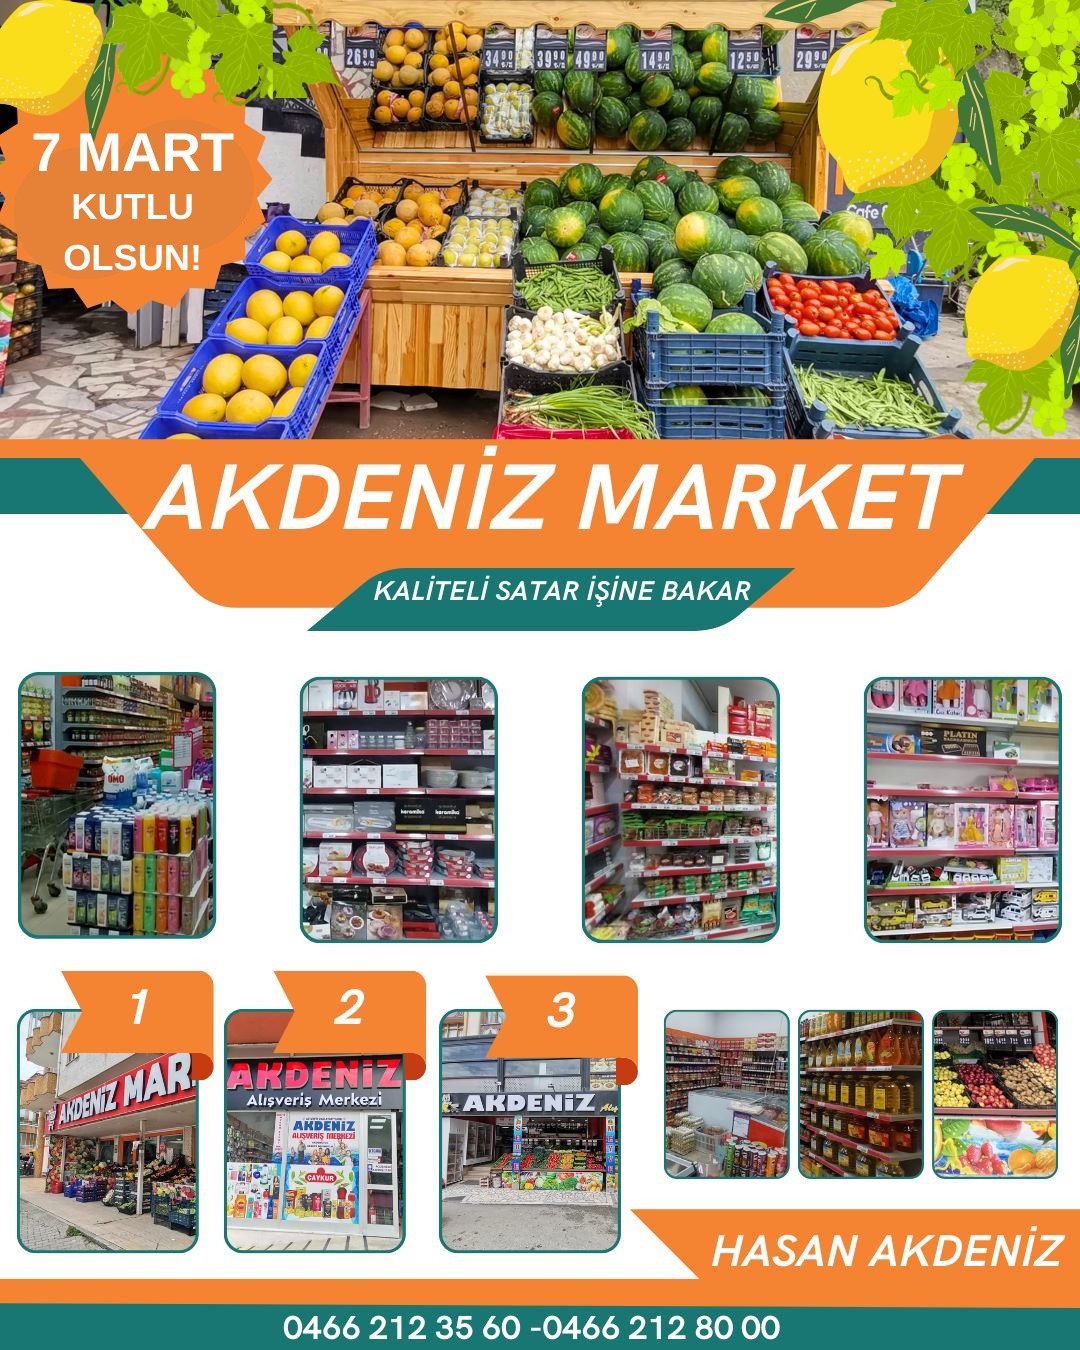 İlimizin seçkin marketlerinden Akdeniz Market'ten 7 Mart Mesajı